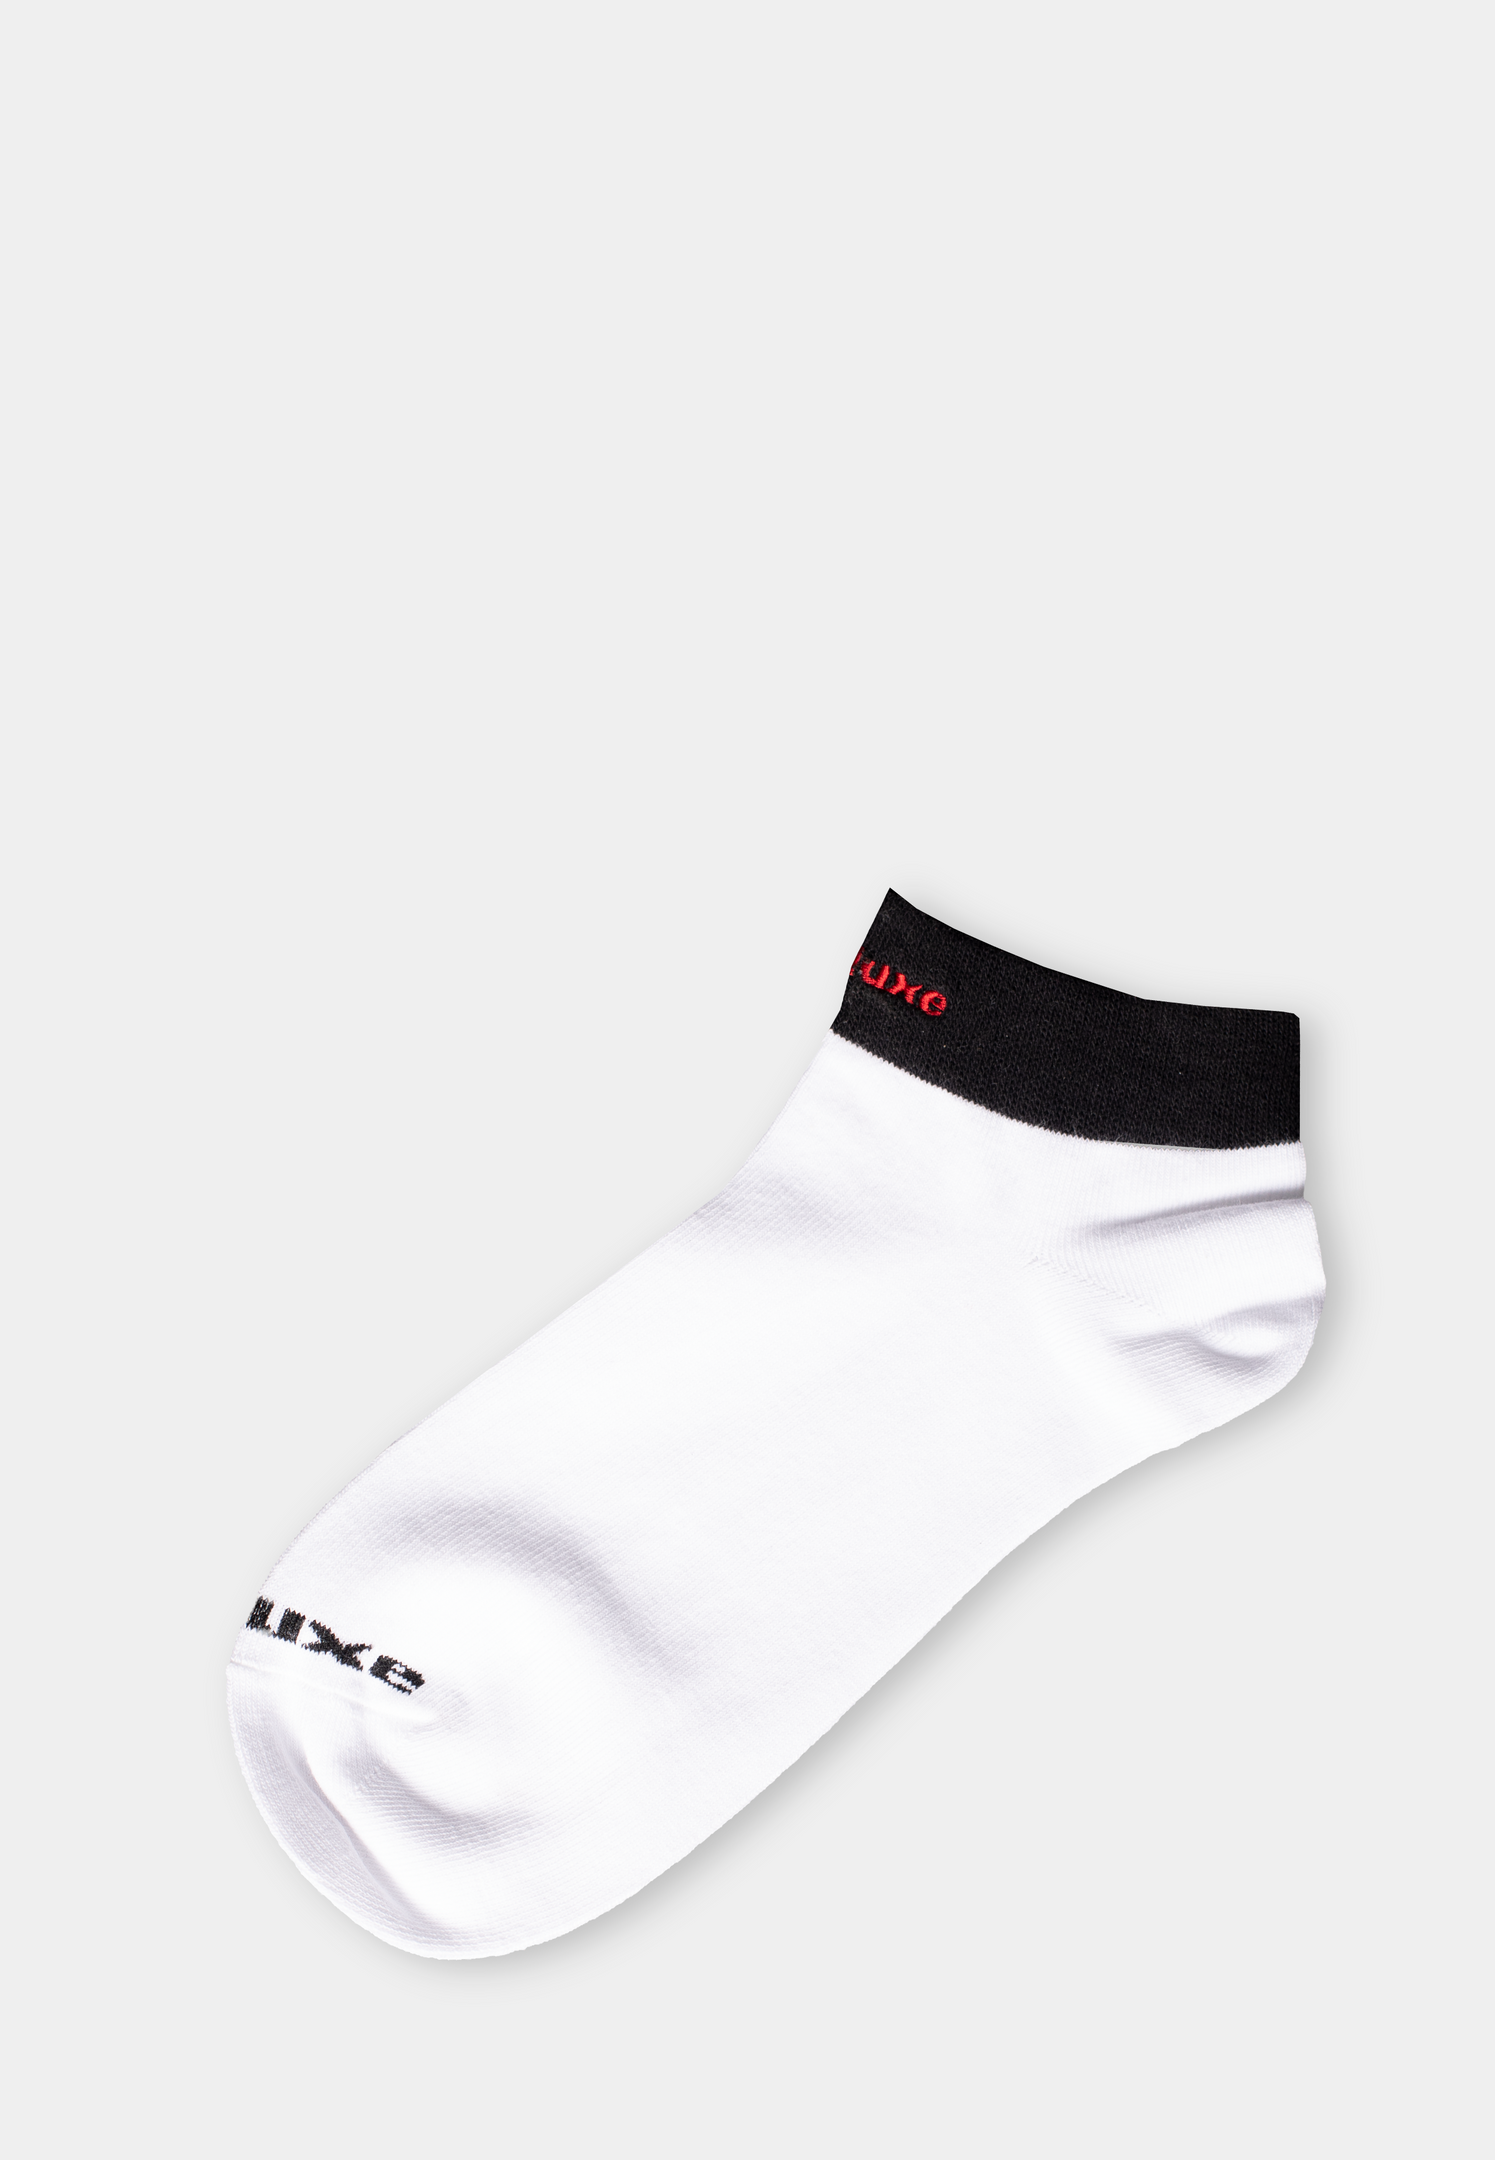 ASHLUXE Ankle Socks  Black White